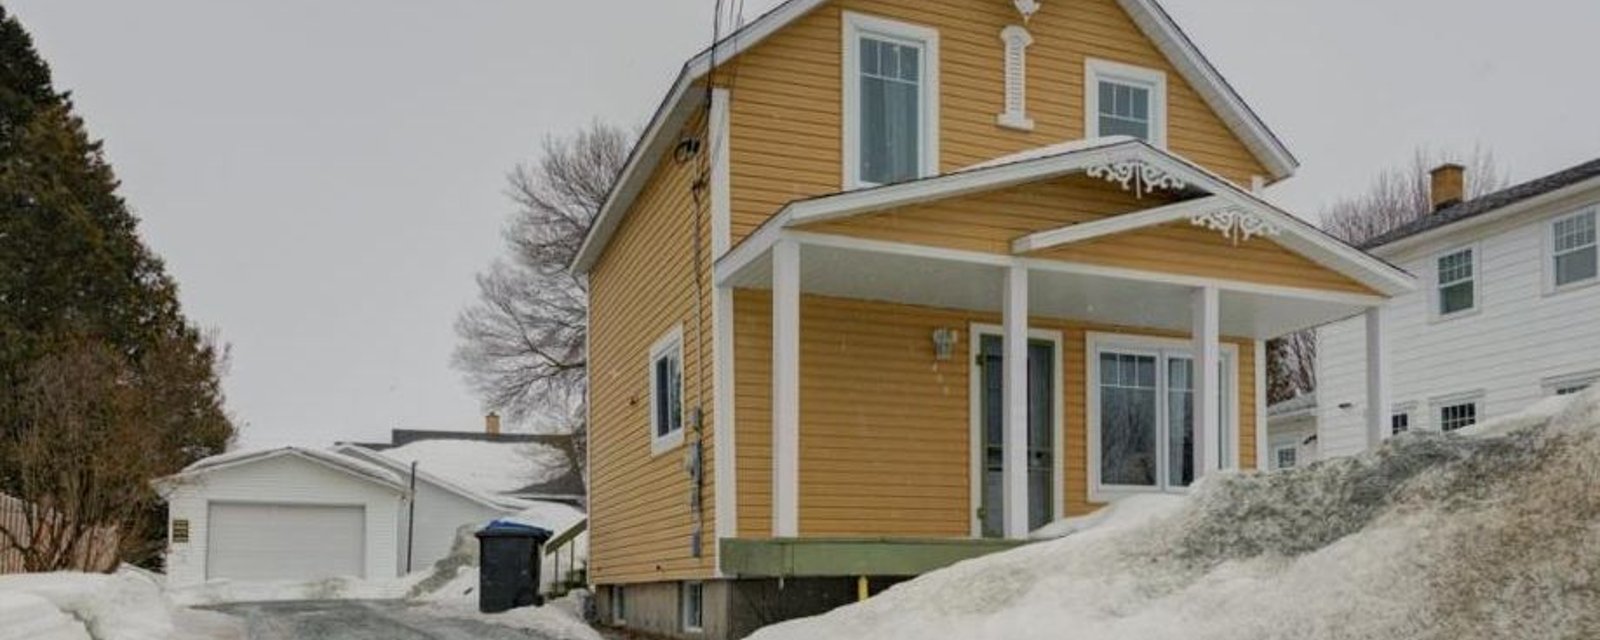 Coquette maisonnette de 3 chambres avec garage détaché à vendre pour 129 900$